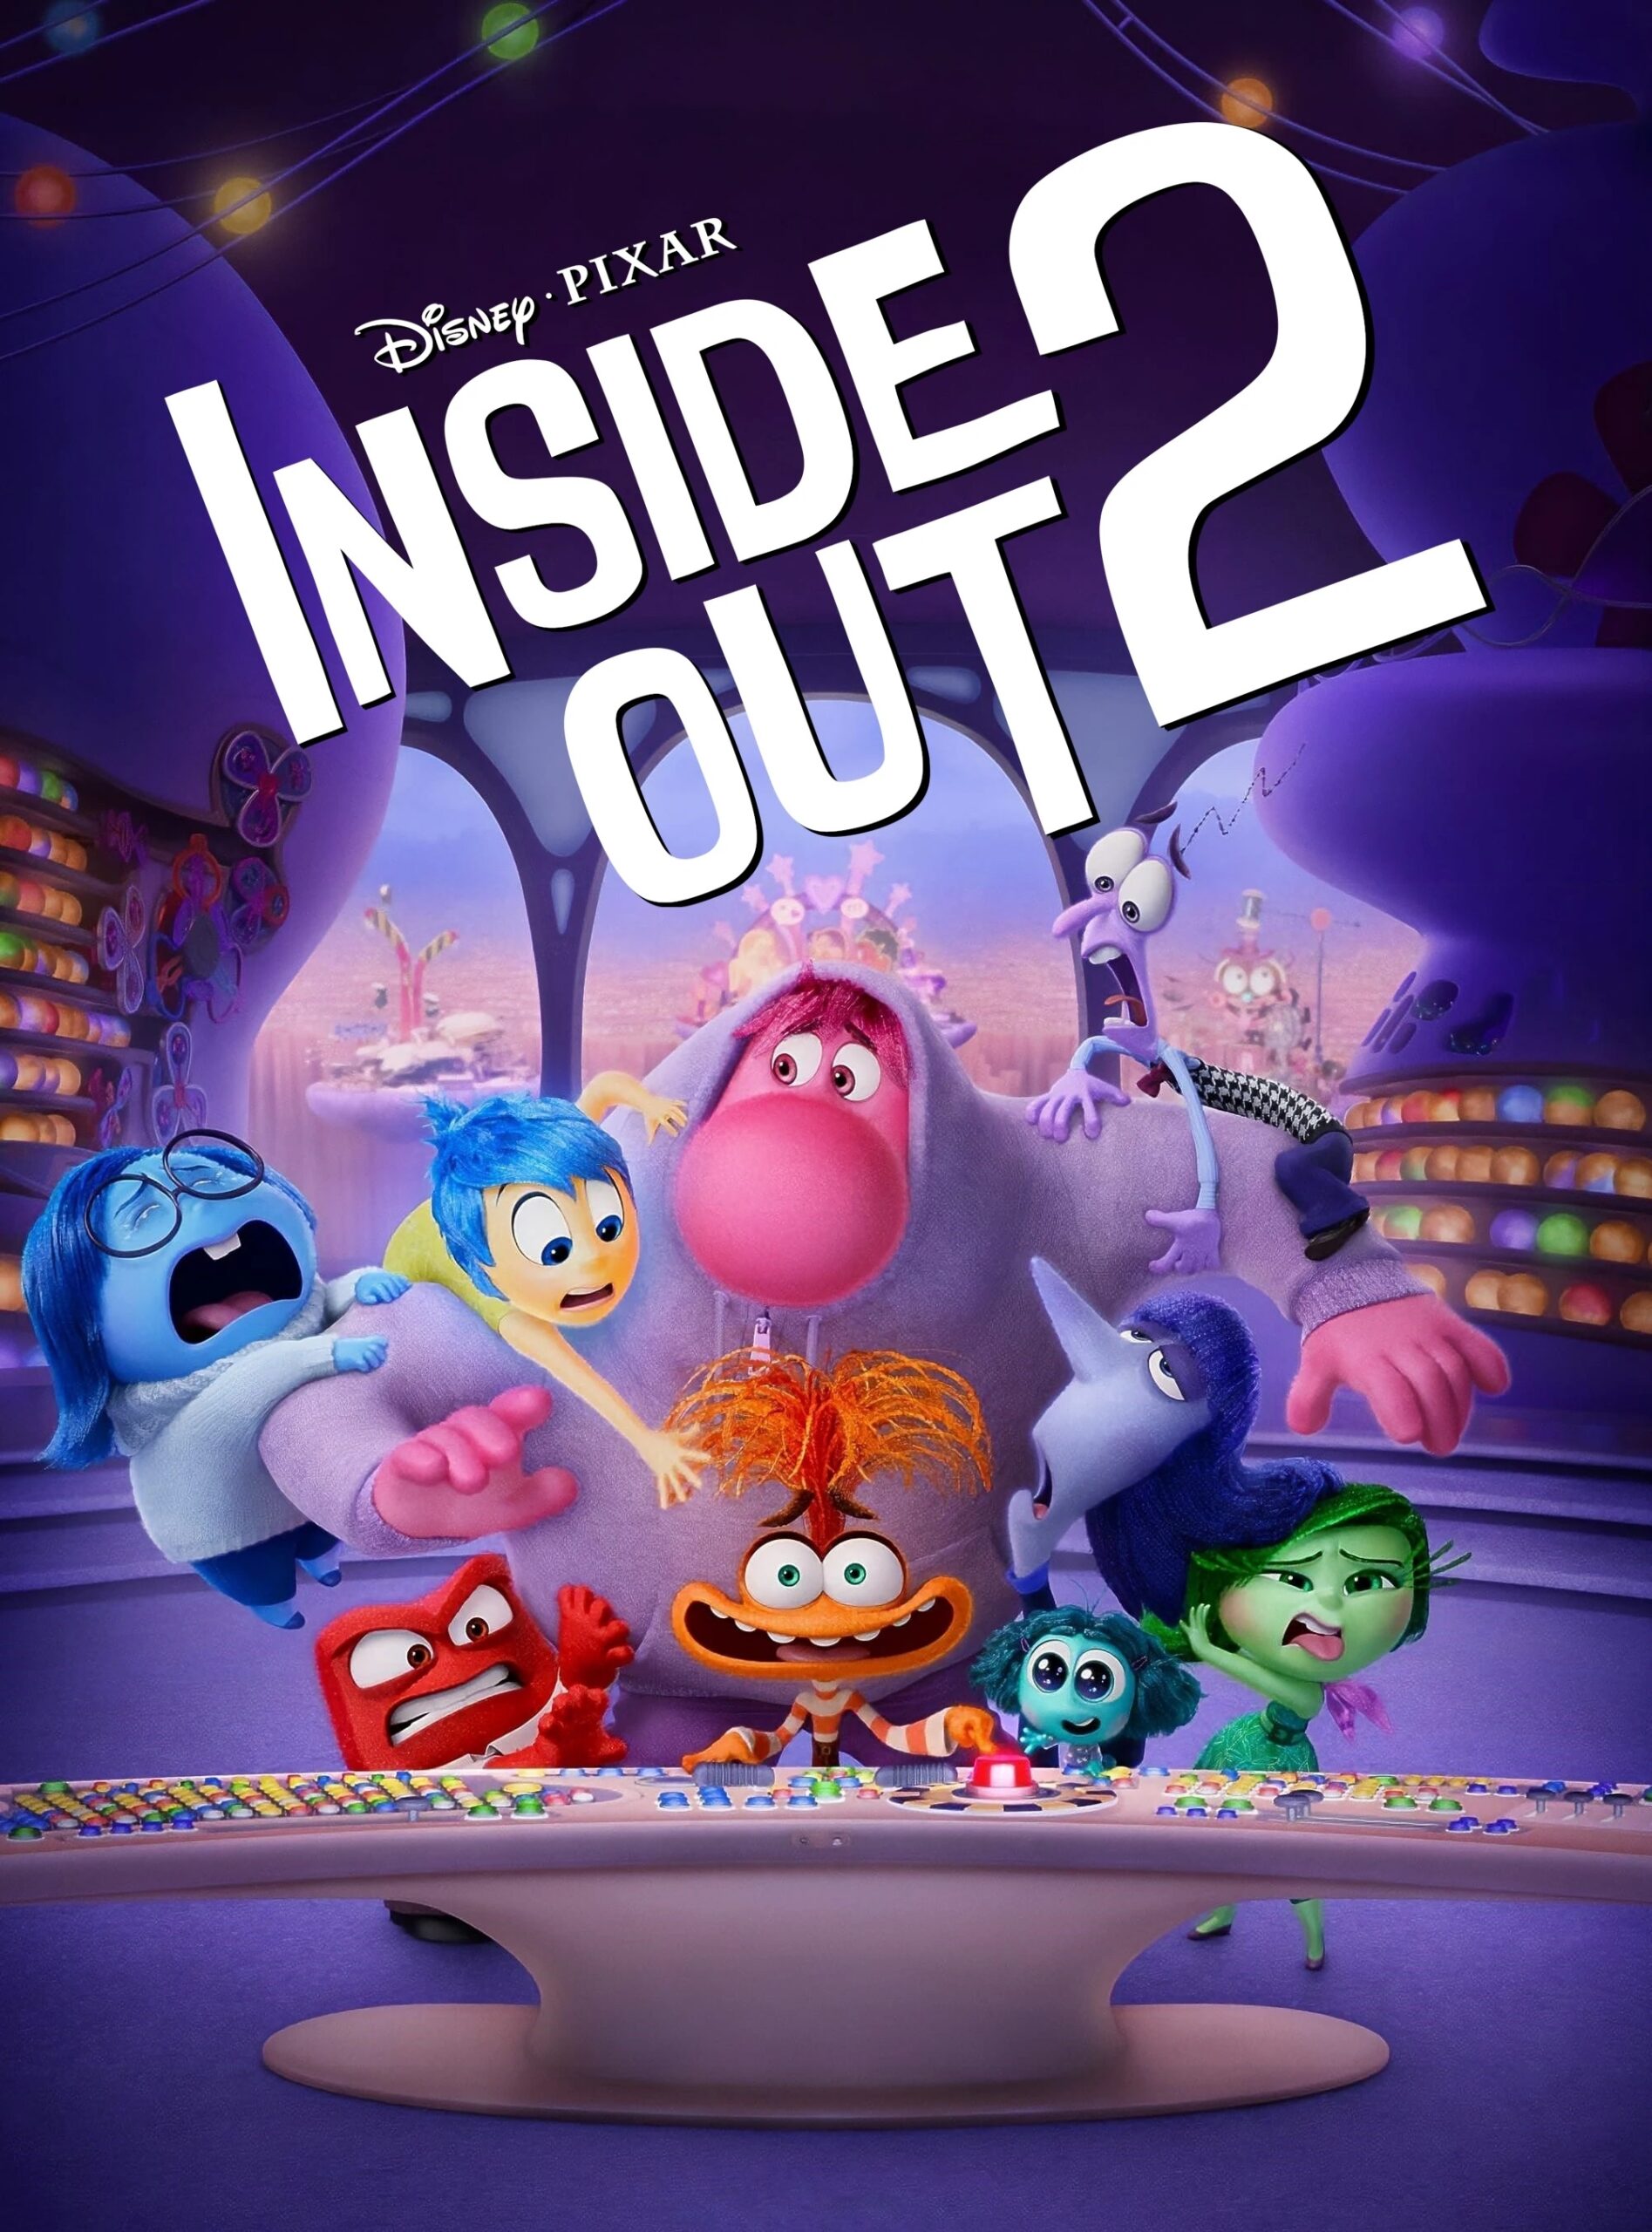 Poster phim hoạt hình Inside Out 2 (Ảnh: Internet)